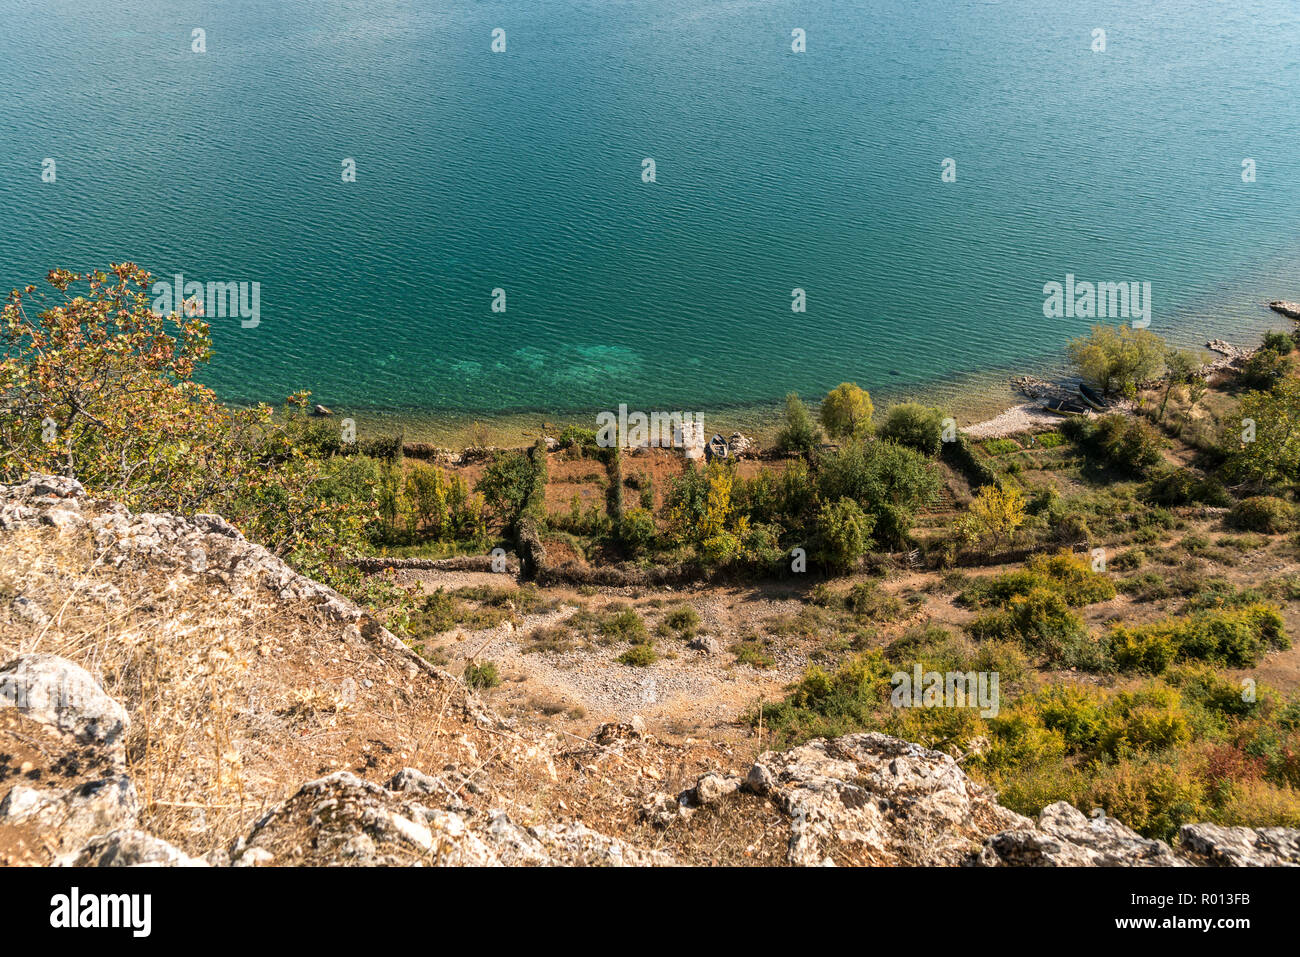 Gärten am Ufer des Ohridsee bei der Ortschaft Lin, Albanien, Europa | giardini in riva al lago di Ohrid vicino al villaggio di Lin, Albania, Europa Foto Stock